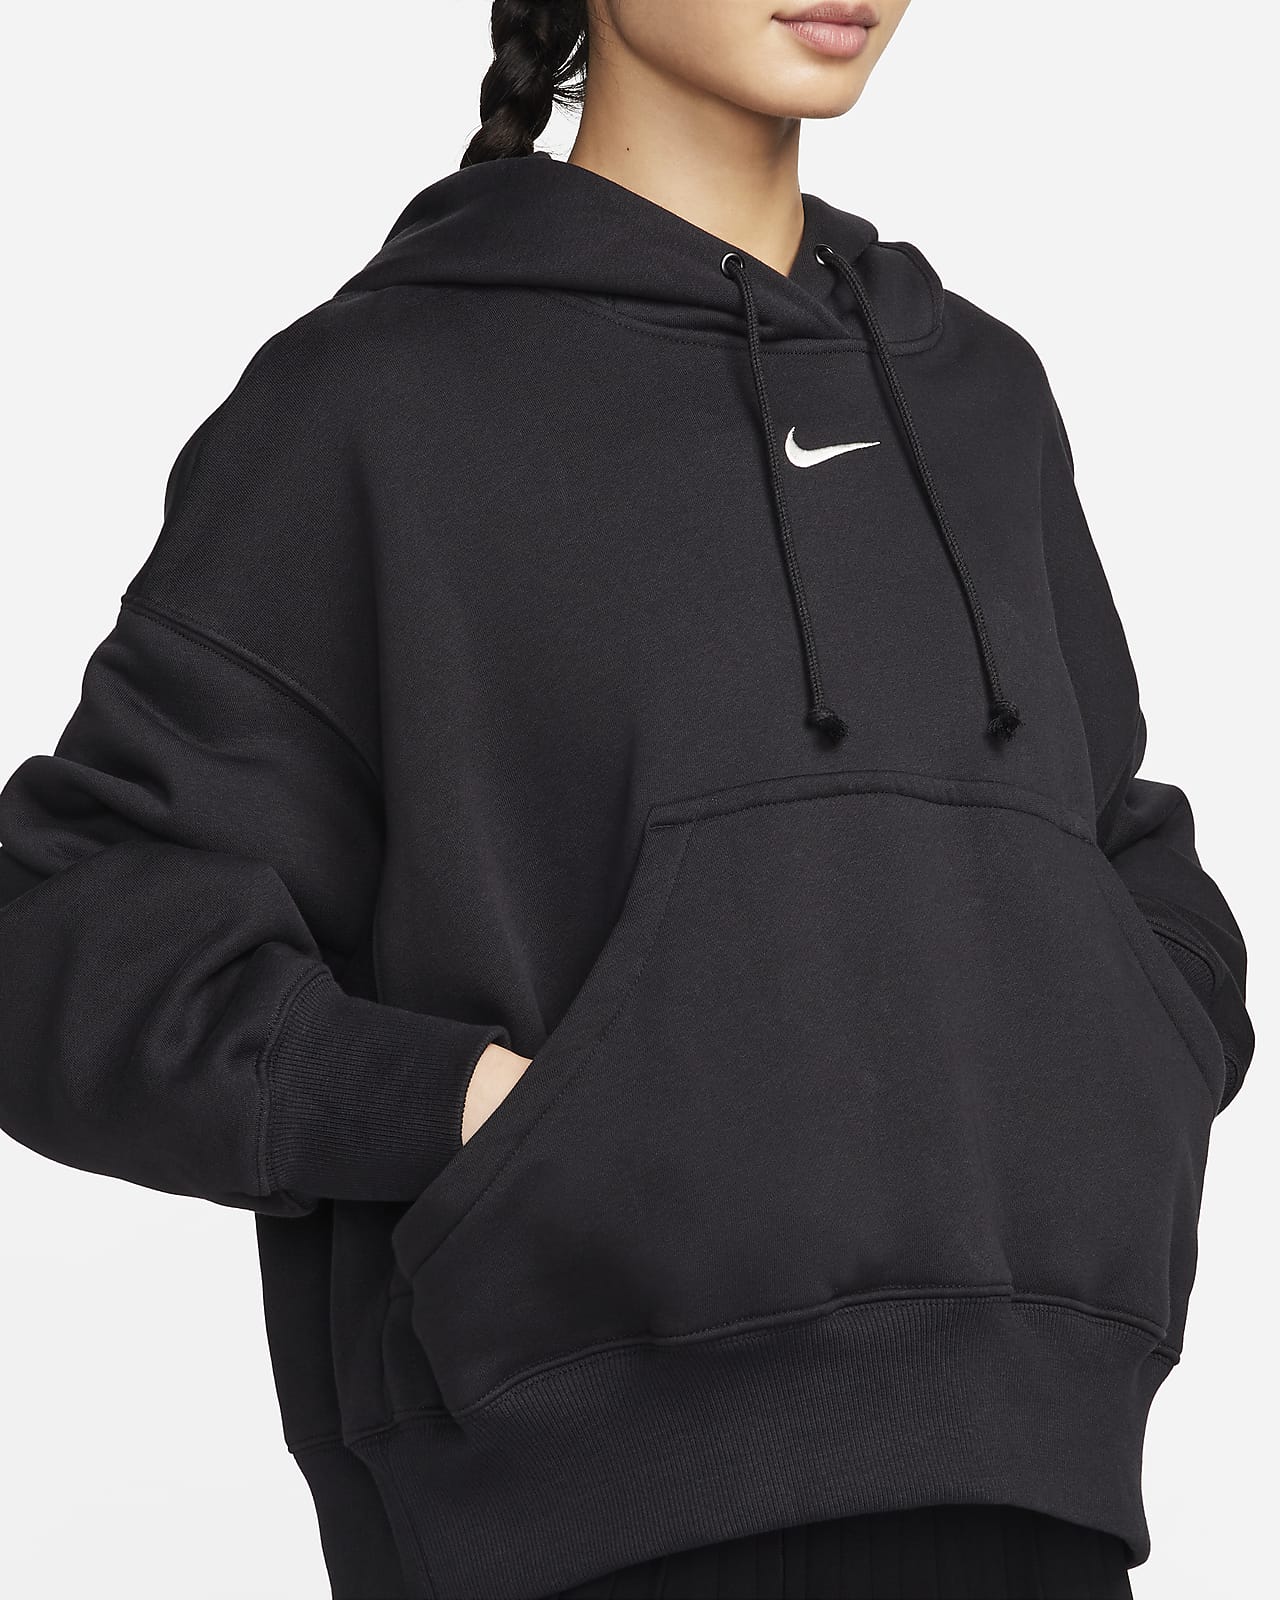 Oversized Hoodies & Sweatshirts. Nike SG